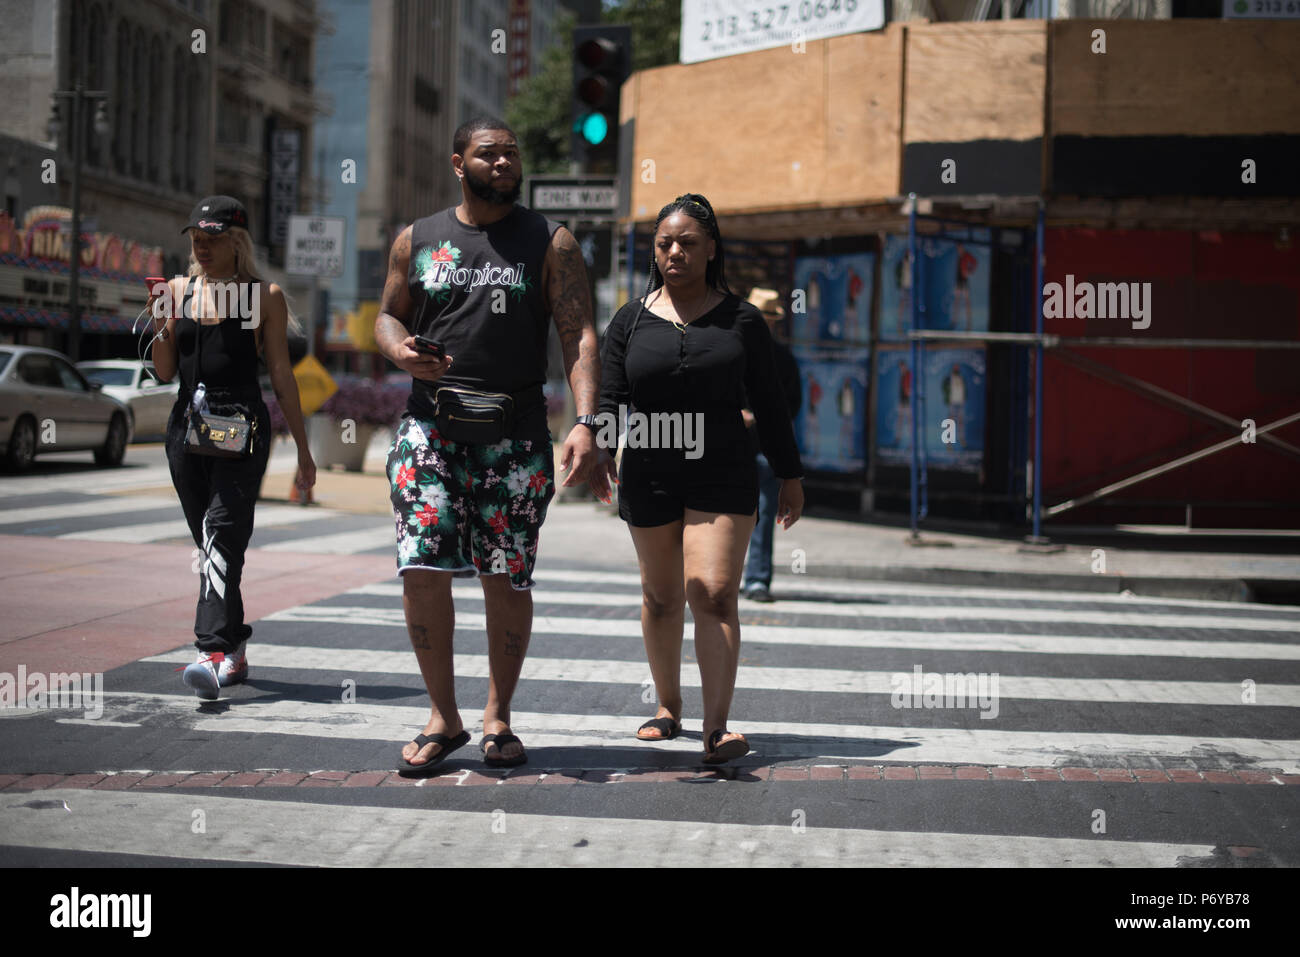 Los Angeles, Stati Uniti d'America - 29 Giugno: casuale non identificato le persone nelle strade del centro cittadino di Los Angeles, CA il 29 giugno 2018. Foto Stock